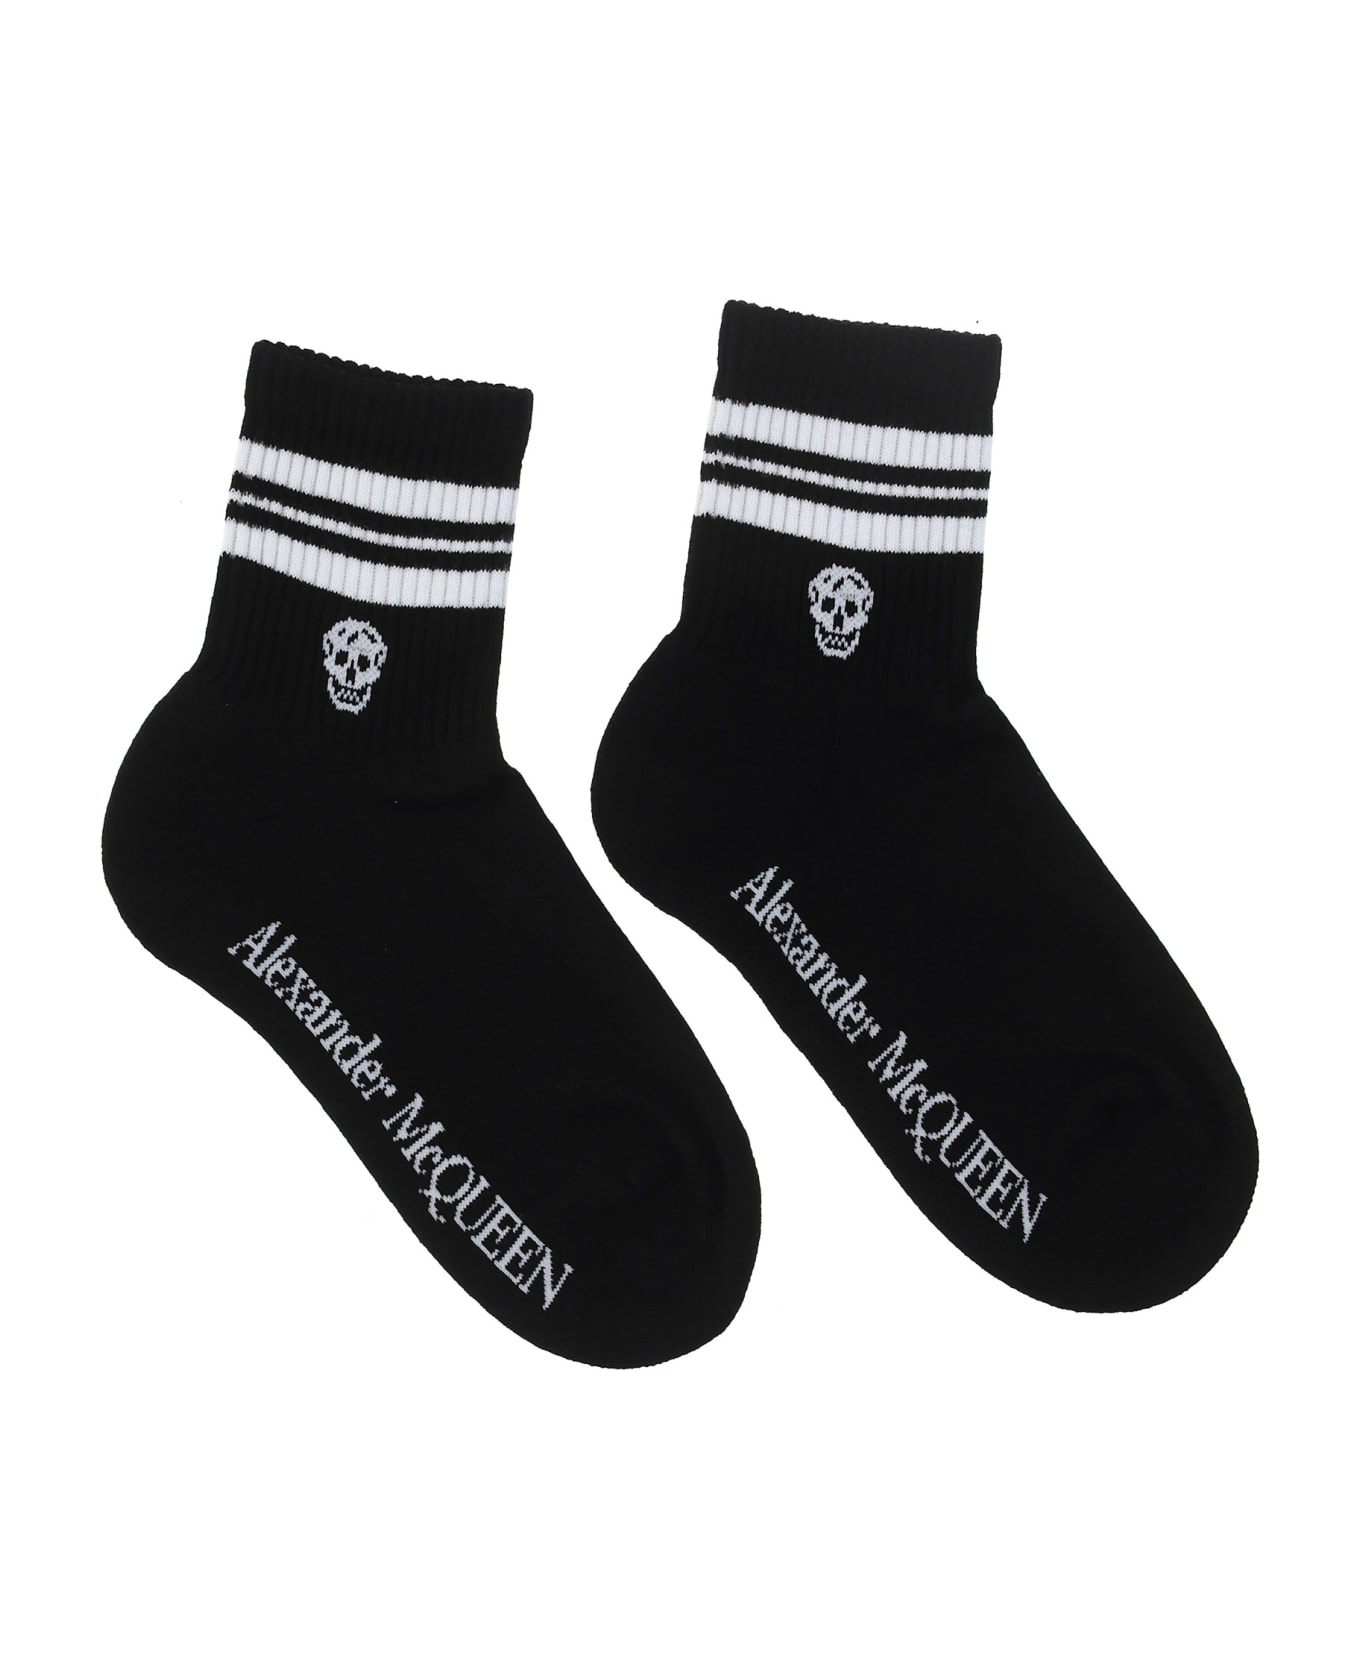 Alexander McQueen Socks - Black/white